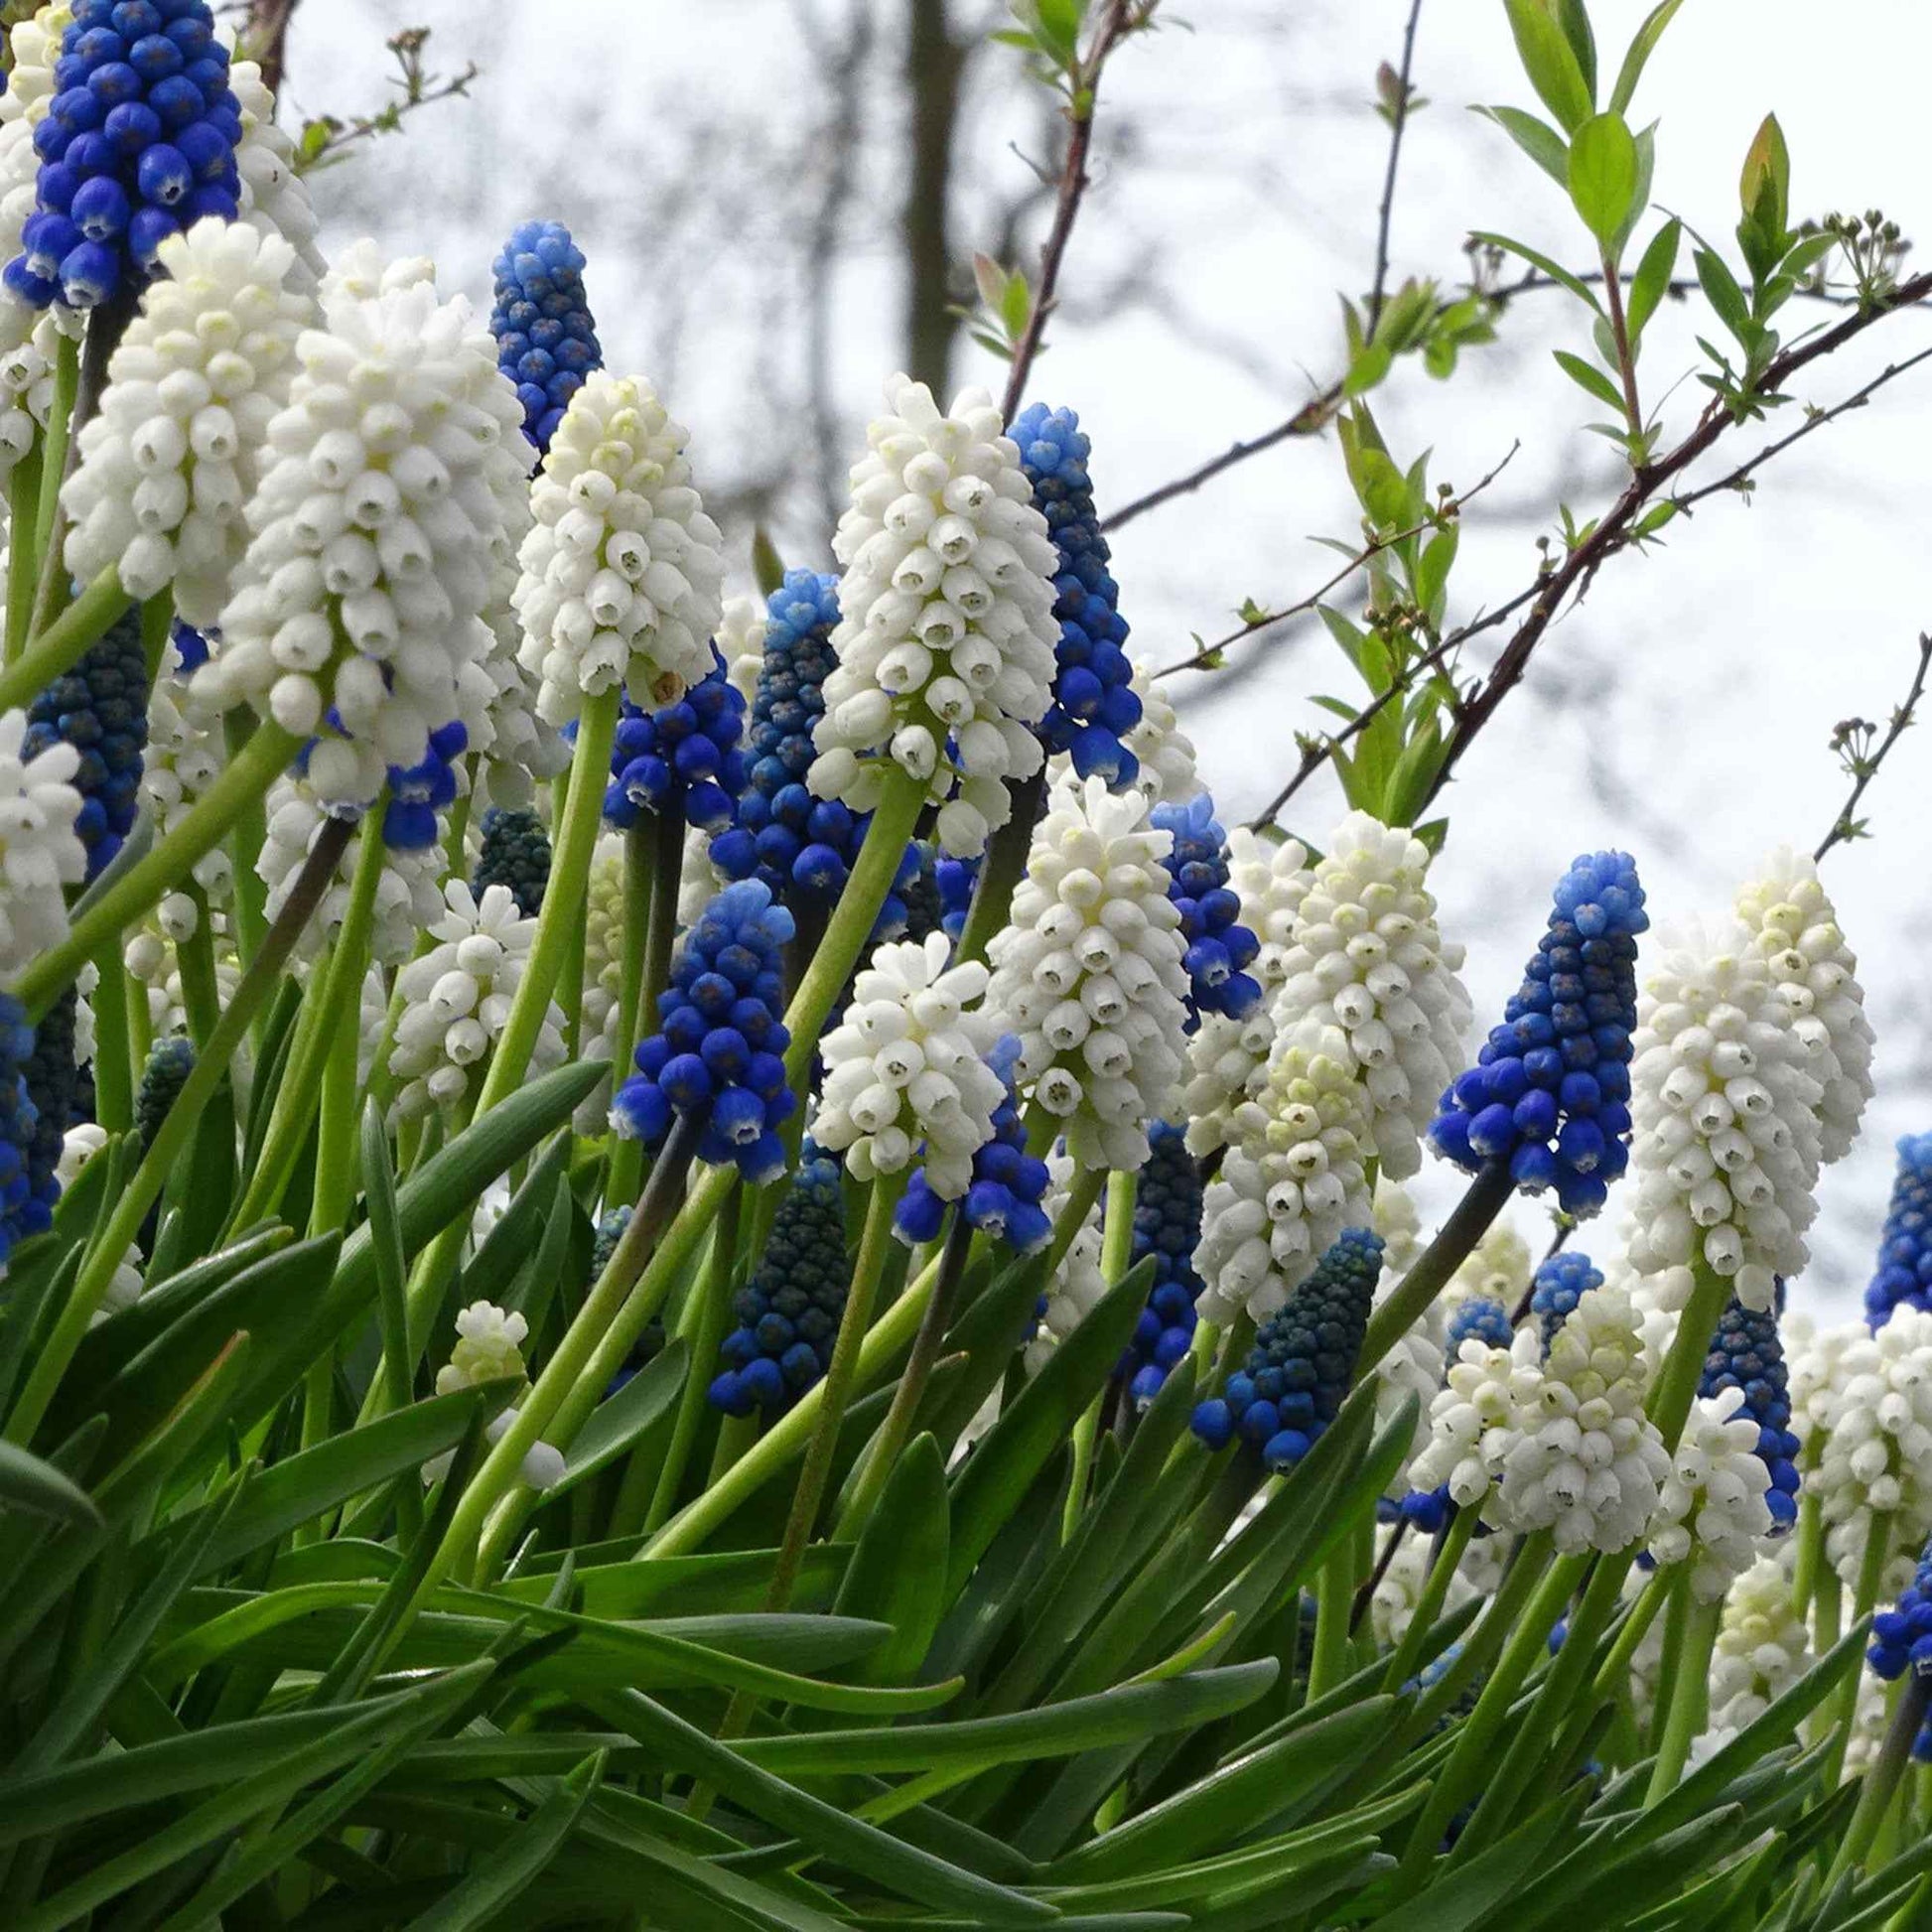 40x Blauwe + witte druifjes Muscari armeniacum blauw-wit - Bijvriendelijke bloembollen